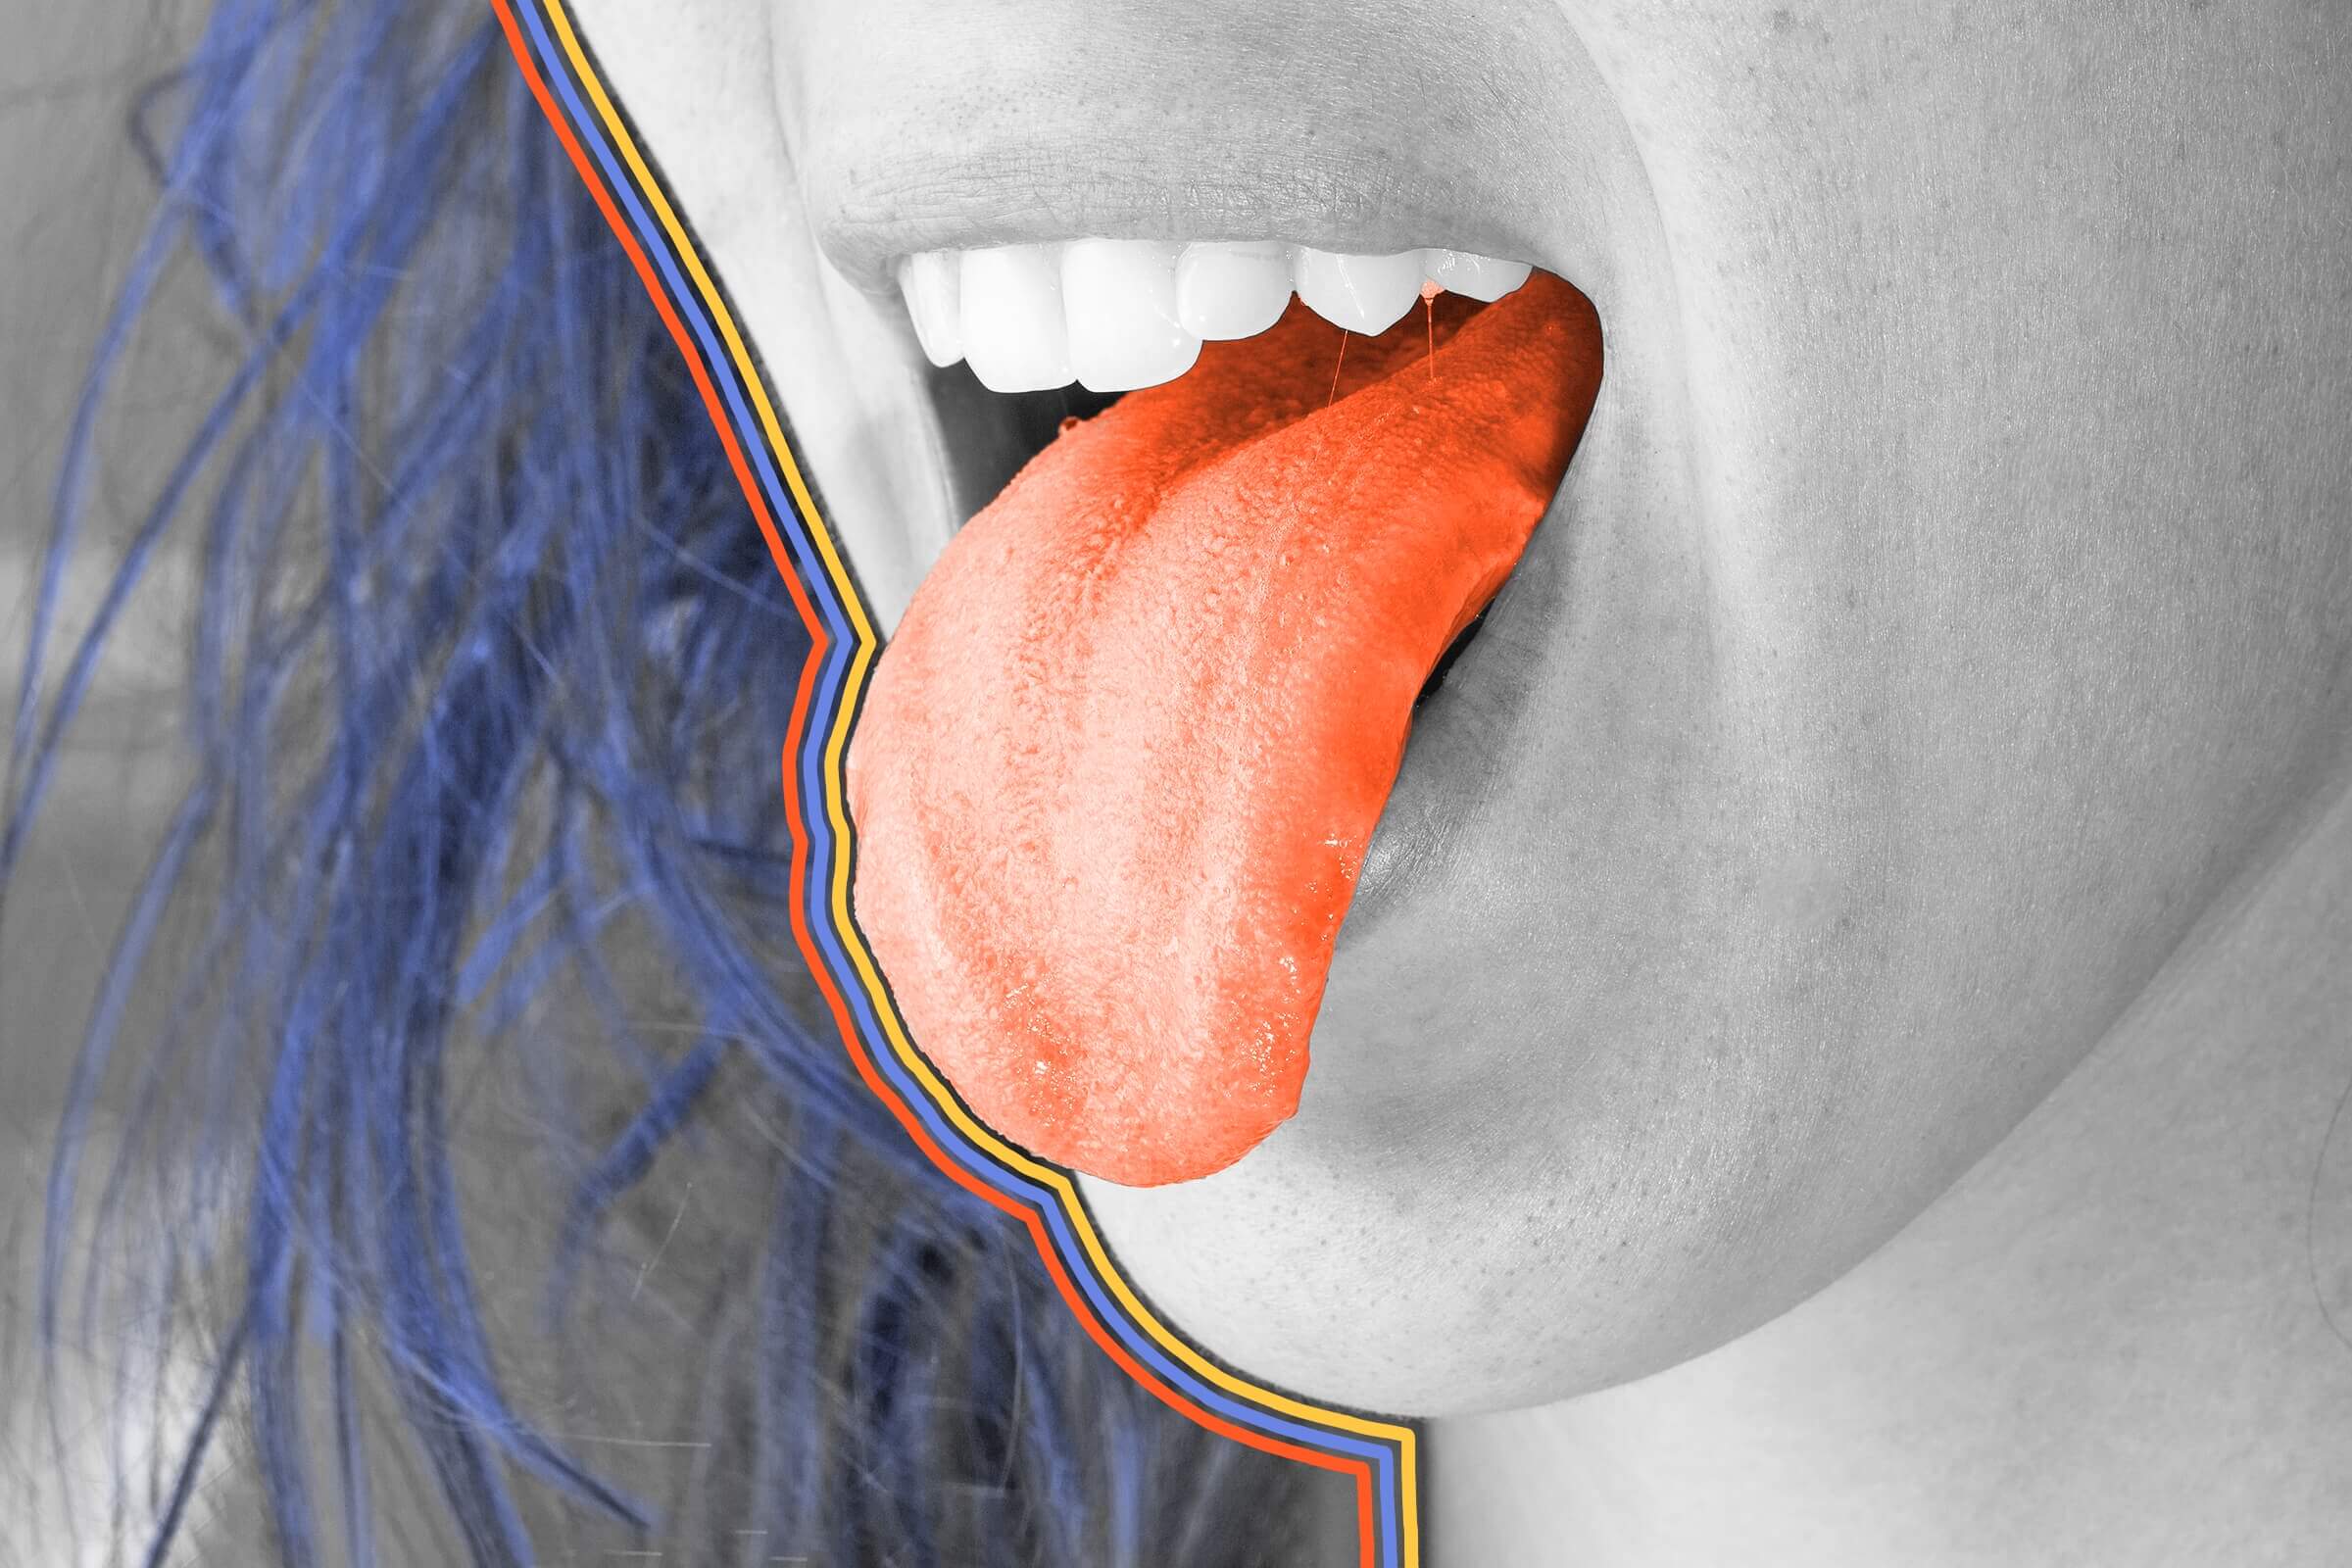 Everyone has a unique tongue print.